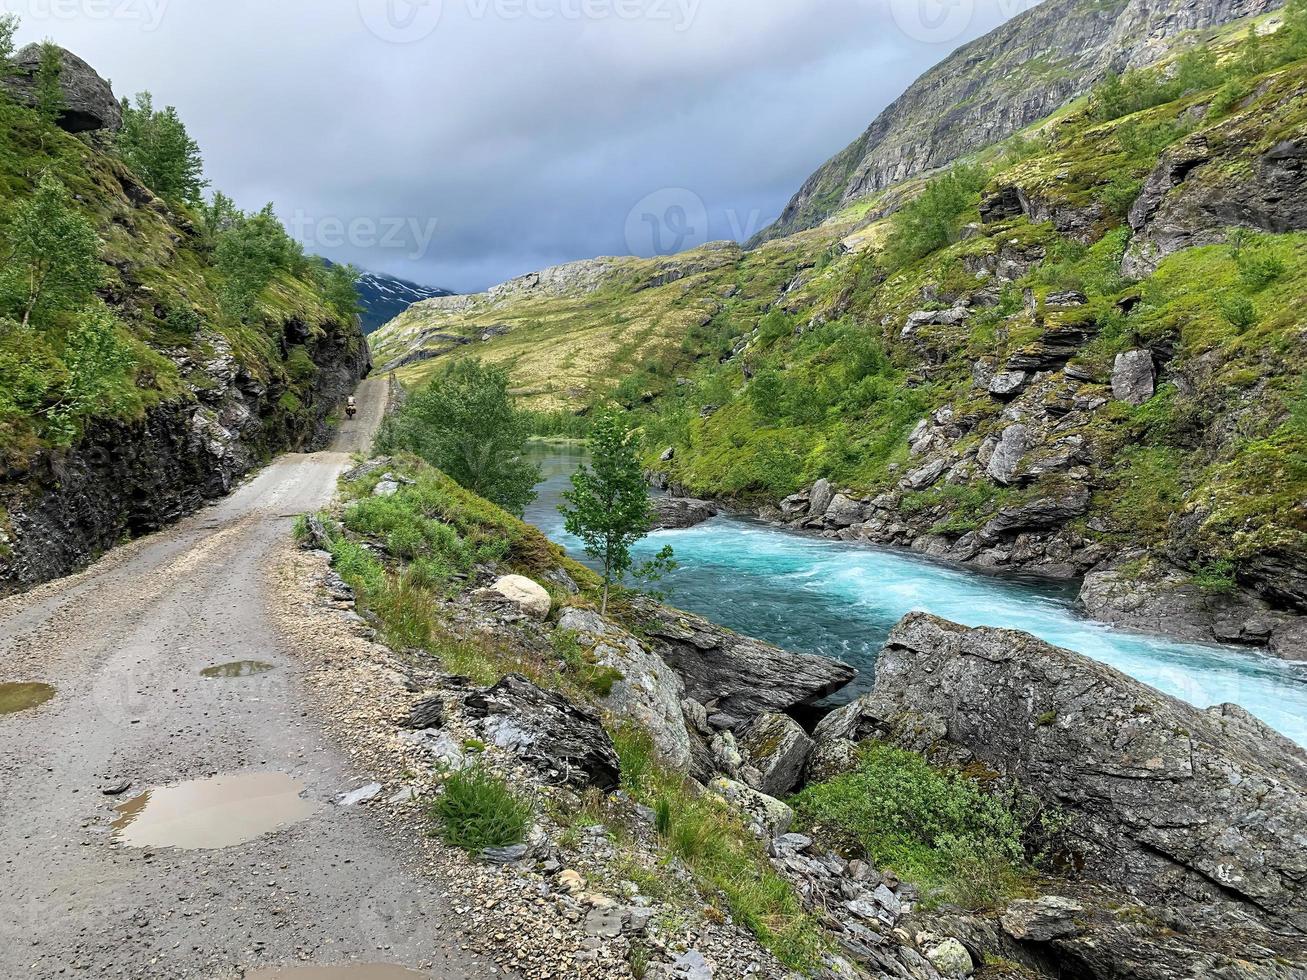 estrada de ciclismo rallarvegen na noruega no verão 22 foto